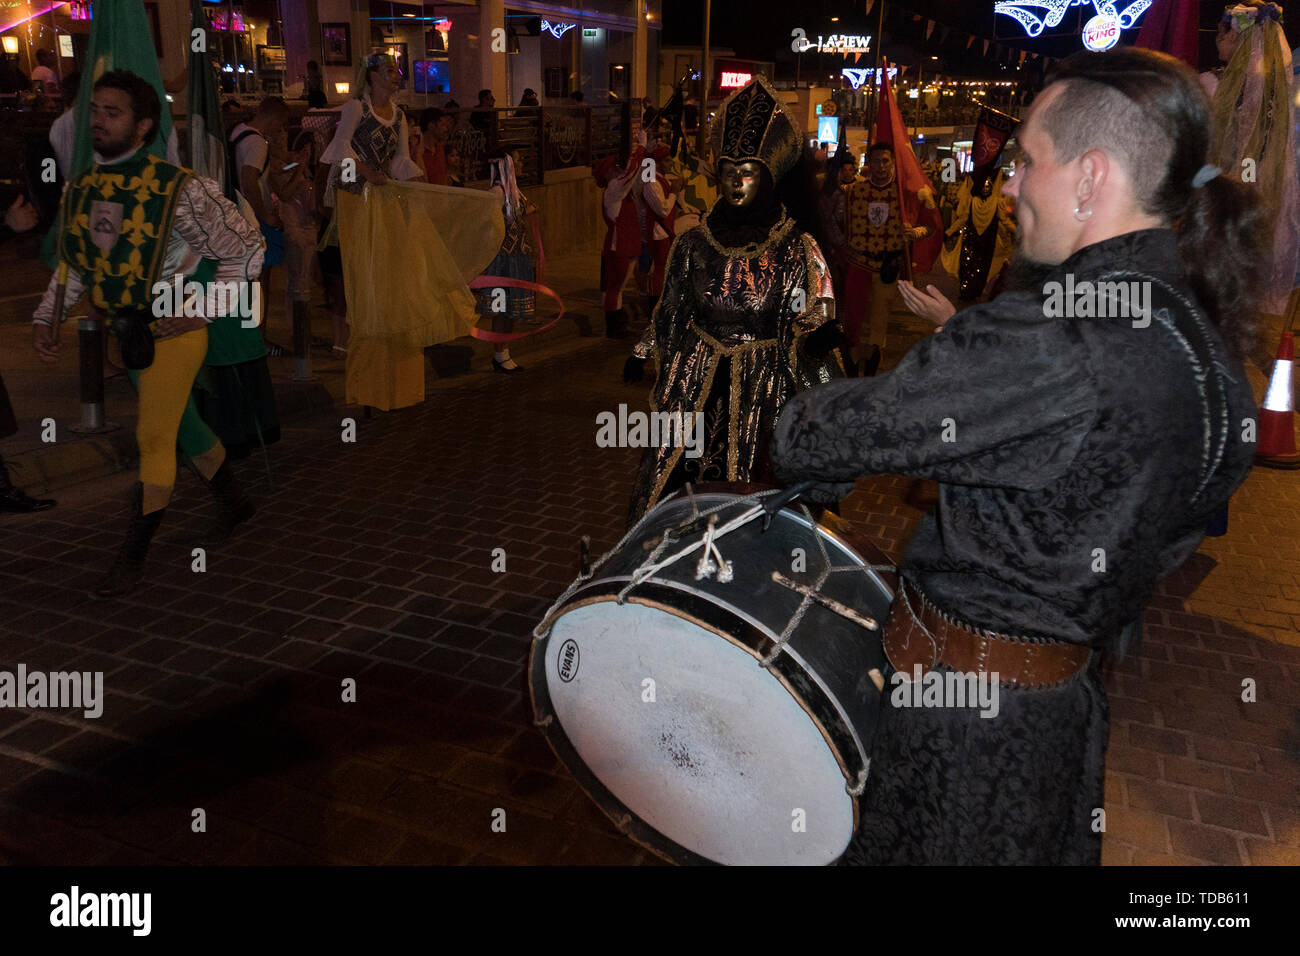 Jährliches Festival der mittelalterlichen Kulturen Europas. Die Prozession der Spalte in der Karneval historische Kostüme der Stadt bei Nacht. Zypern, Ayia Stockfoto